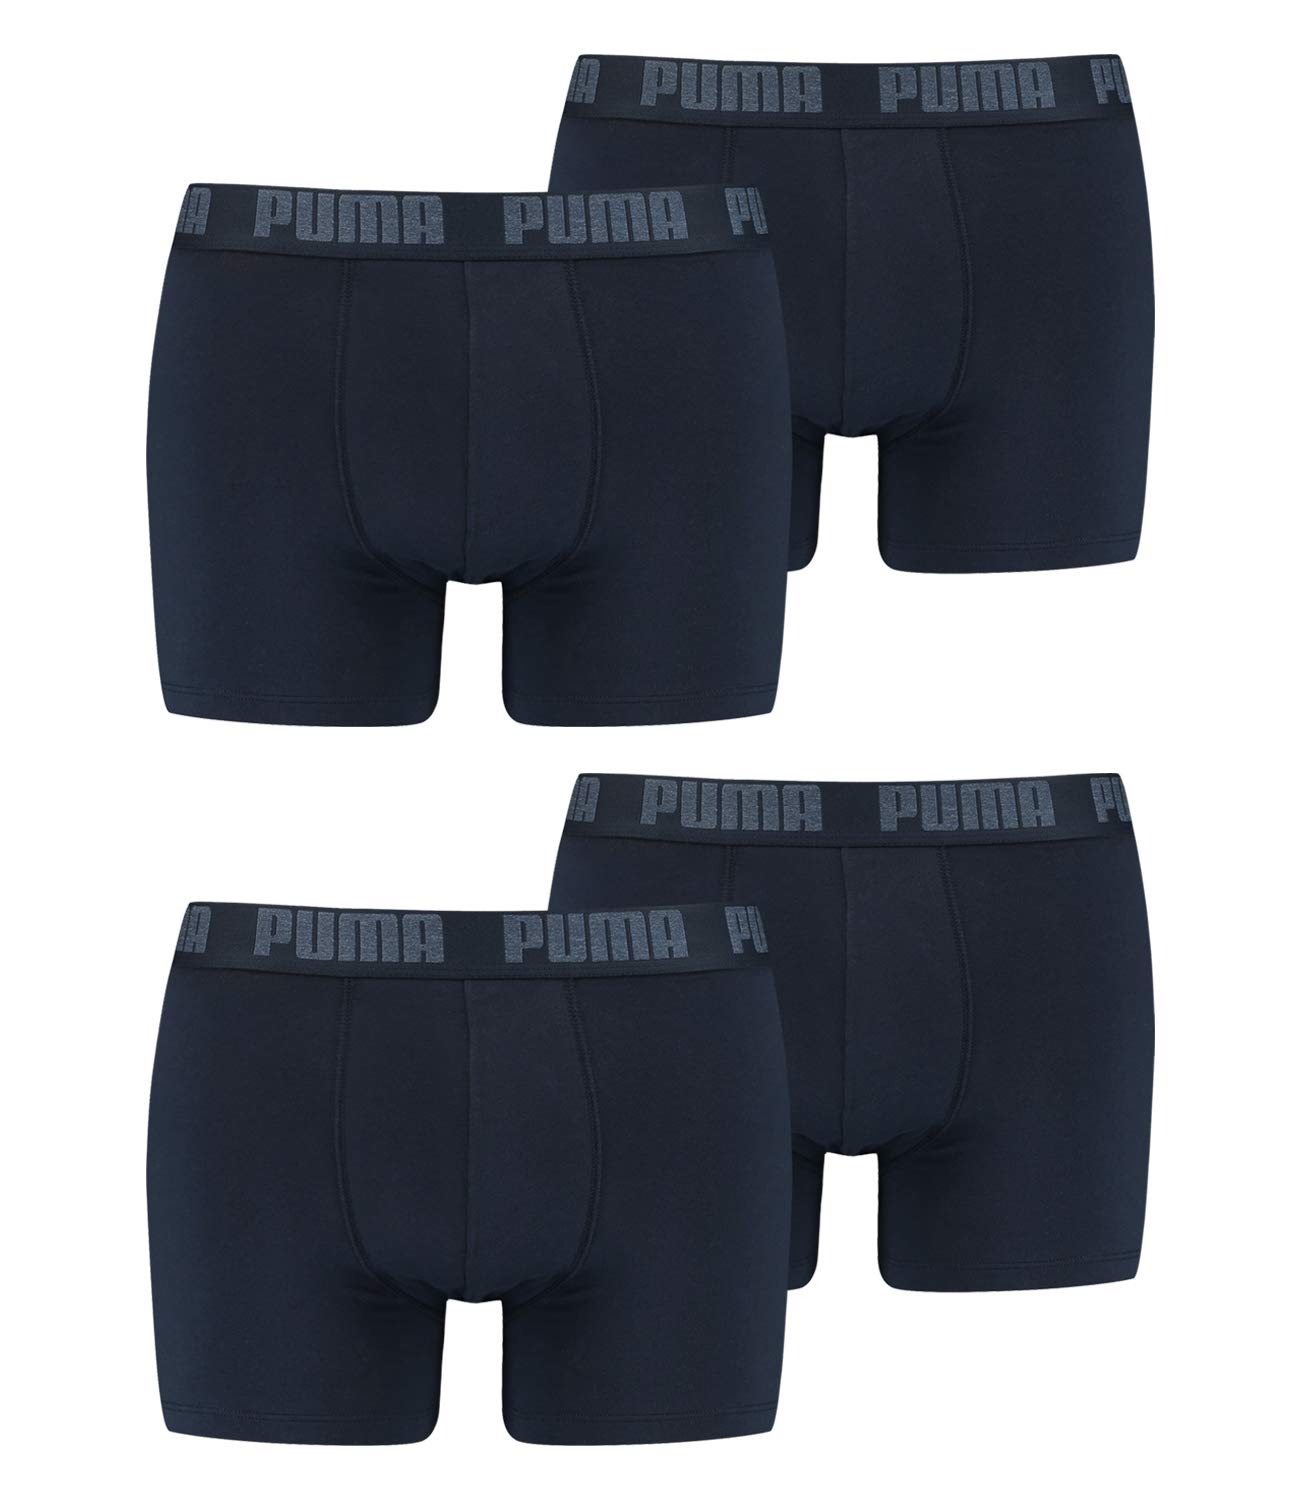 PUMA 4 er Pack Boxer Boxershorts Men Herren Unterhose Pant Unterwäsche, Farbe:321 - Navy, Bekleidungsgröße:XXL